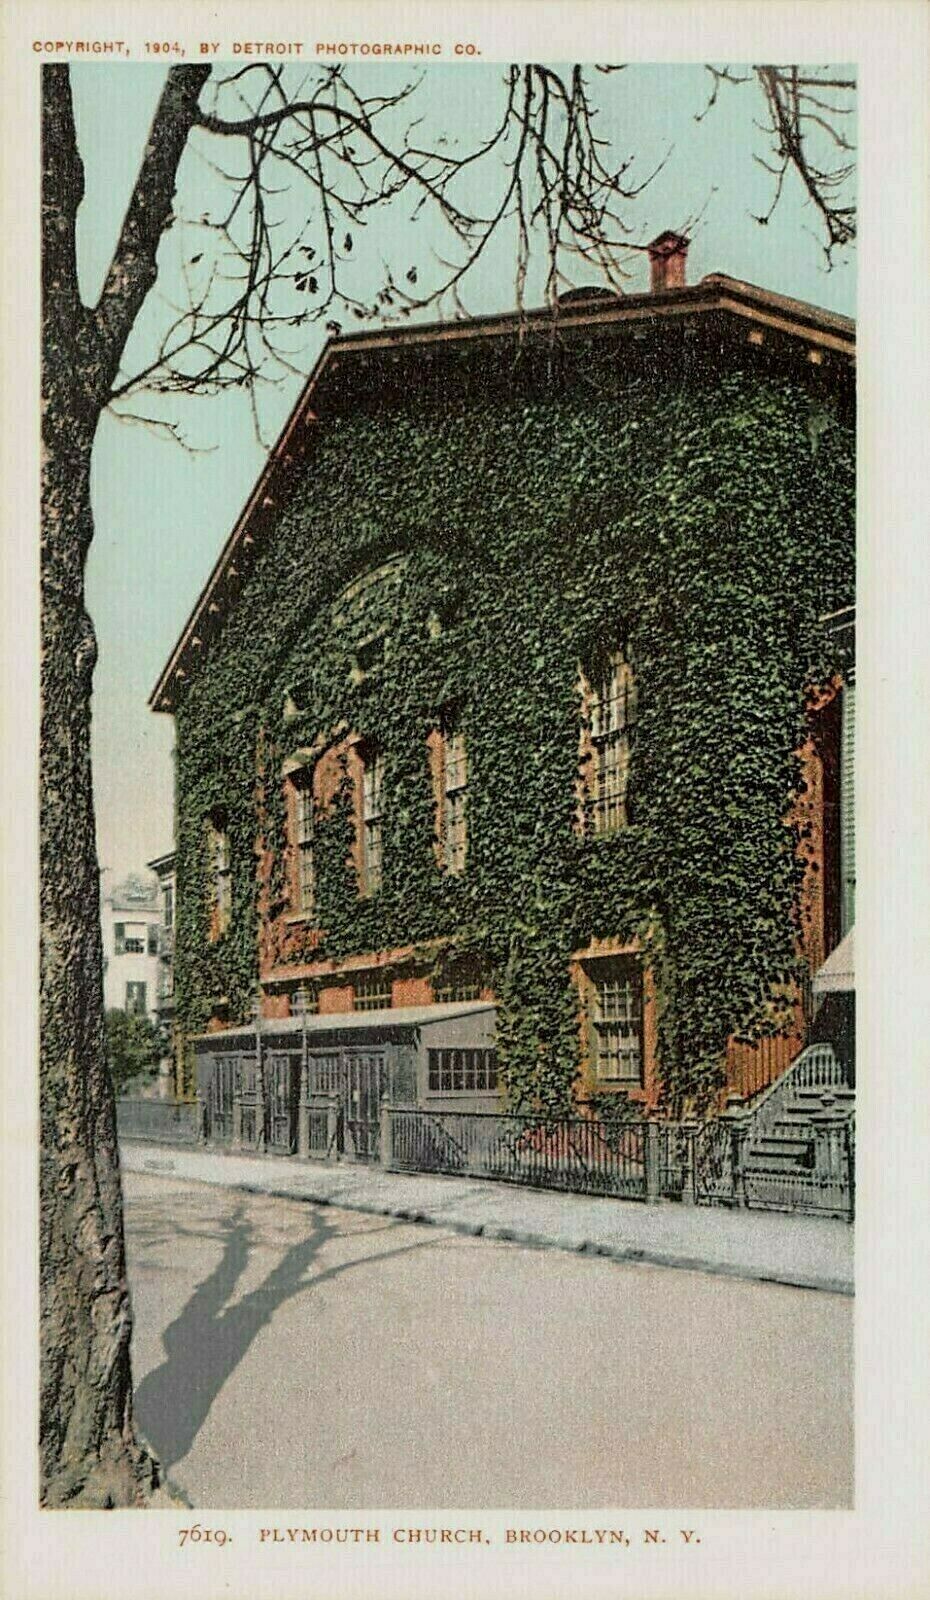 Plymouth Church, Brooklyn, N.Y., 1904 Postcard, Unused, Detroit Photographic Co.